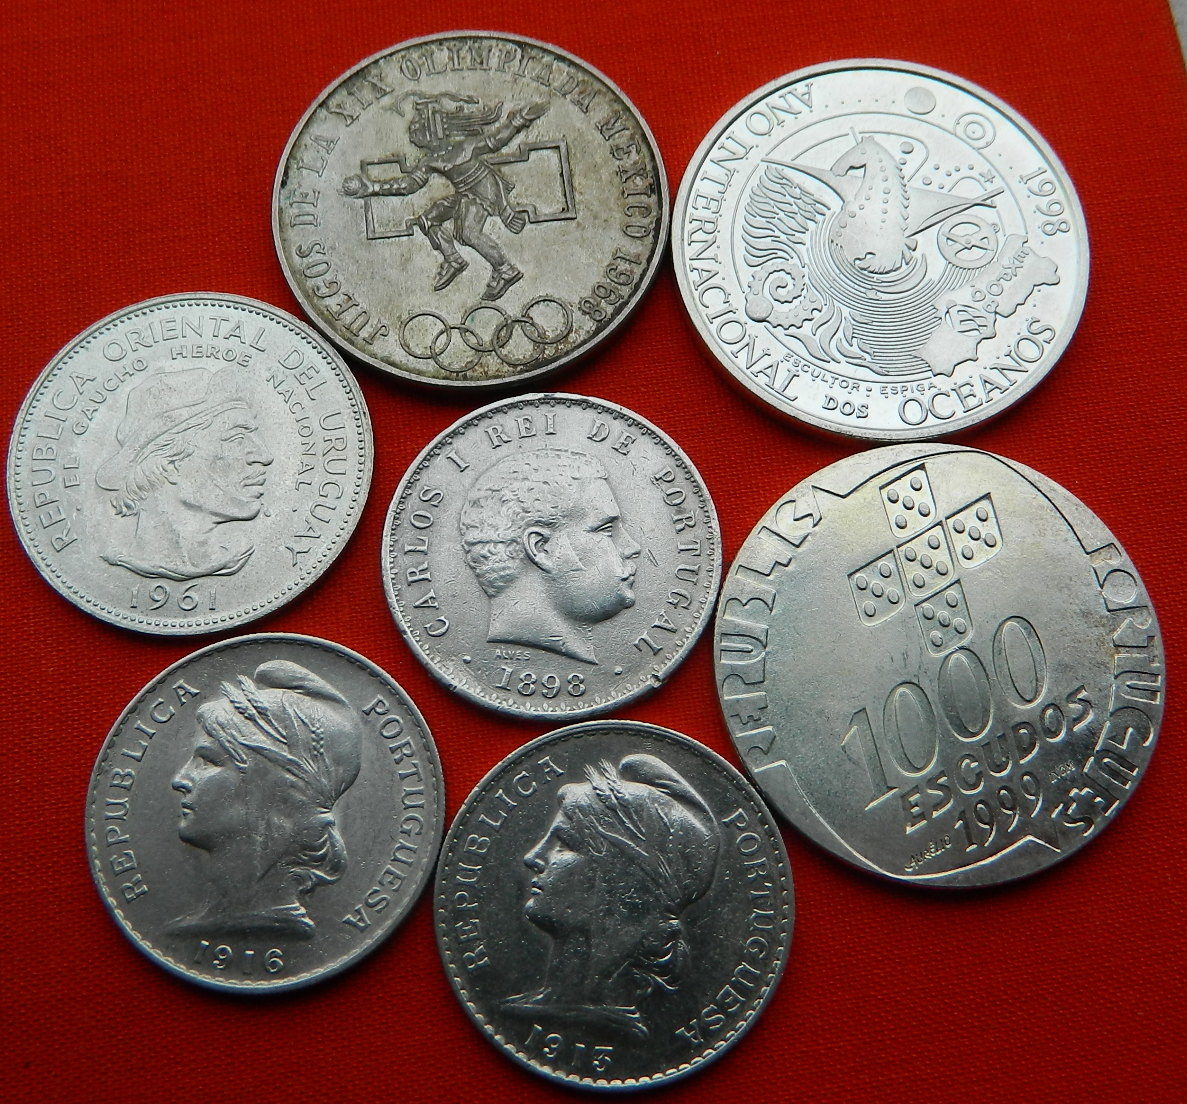 Аукцион монет купить монеты. Аукцион молоток монеты Коллекционирование. Нумизматика - монеты стран 19 века. Монета с молотком рабочий. Где лучше купить монеты.